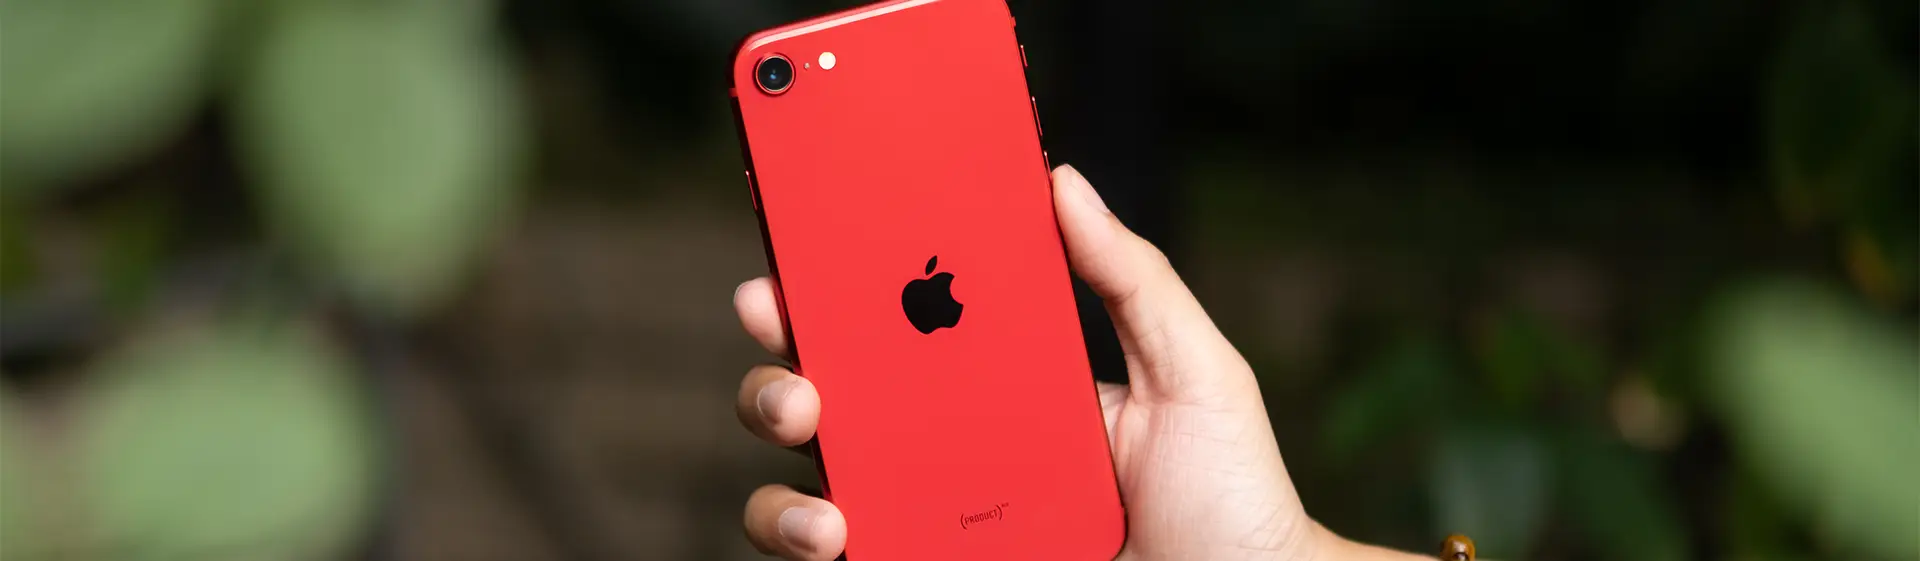 iPhone barato: as melhores opções para comprar em 2022